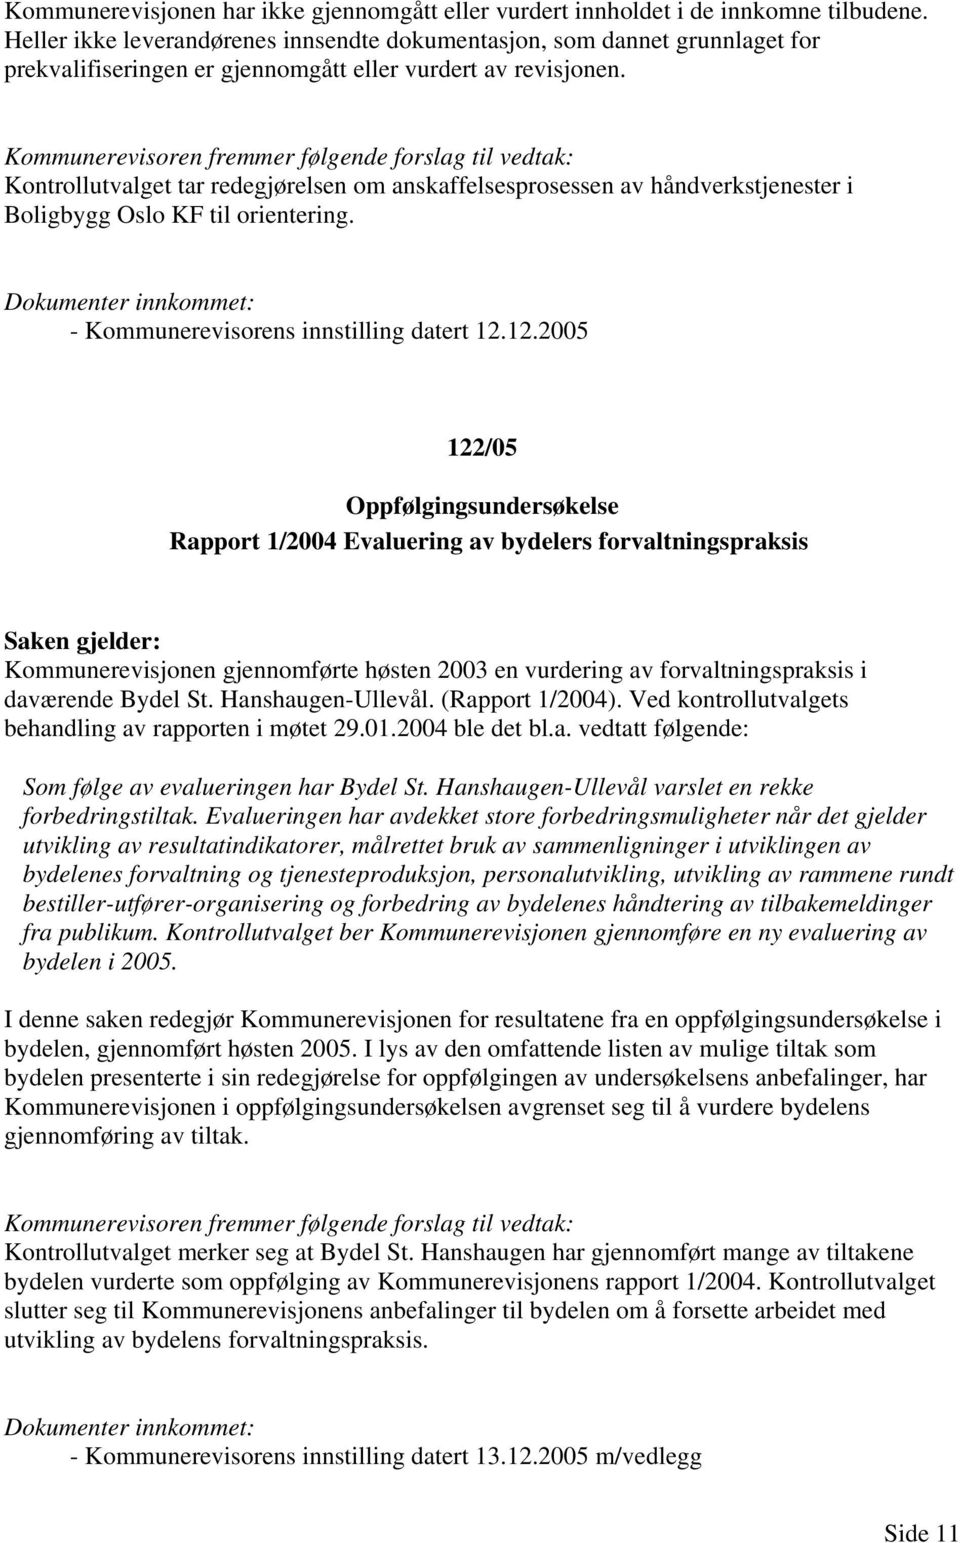 Kontrollutvalget tar redegjørelsen om anskaffelsesprosessen av håndverkstjenester i Boligbygg Oslo KF til orientering. - Kommunerevisorens innstilling datert 12.